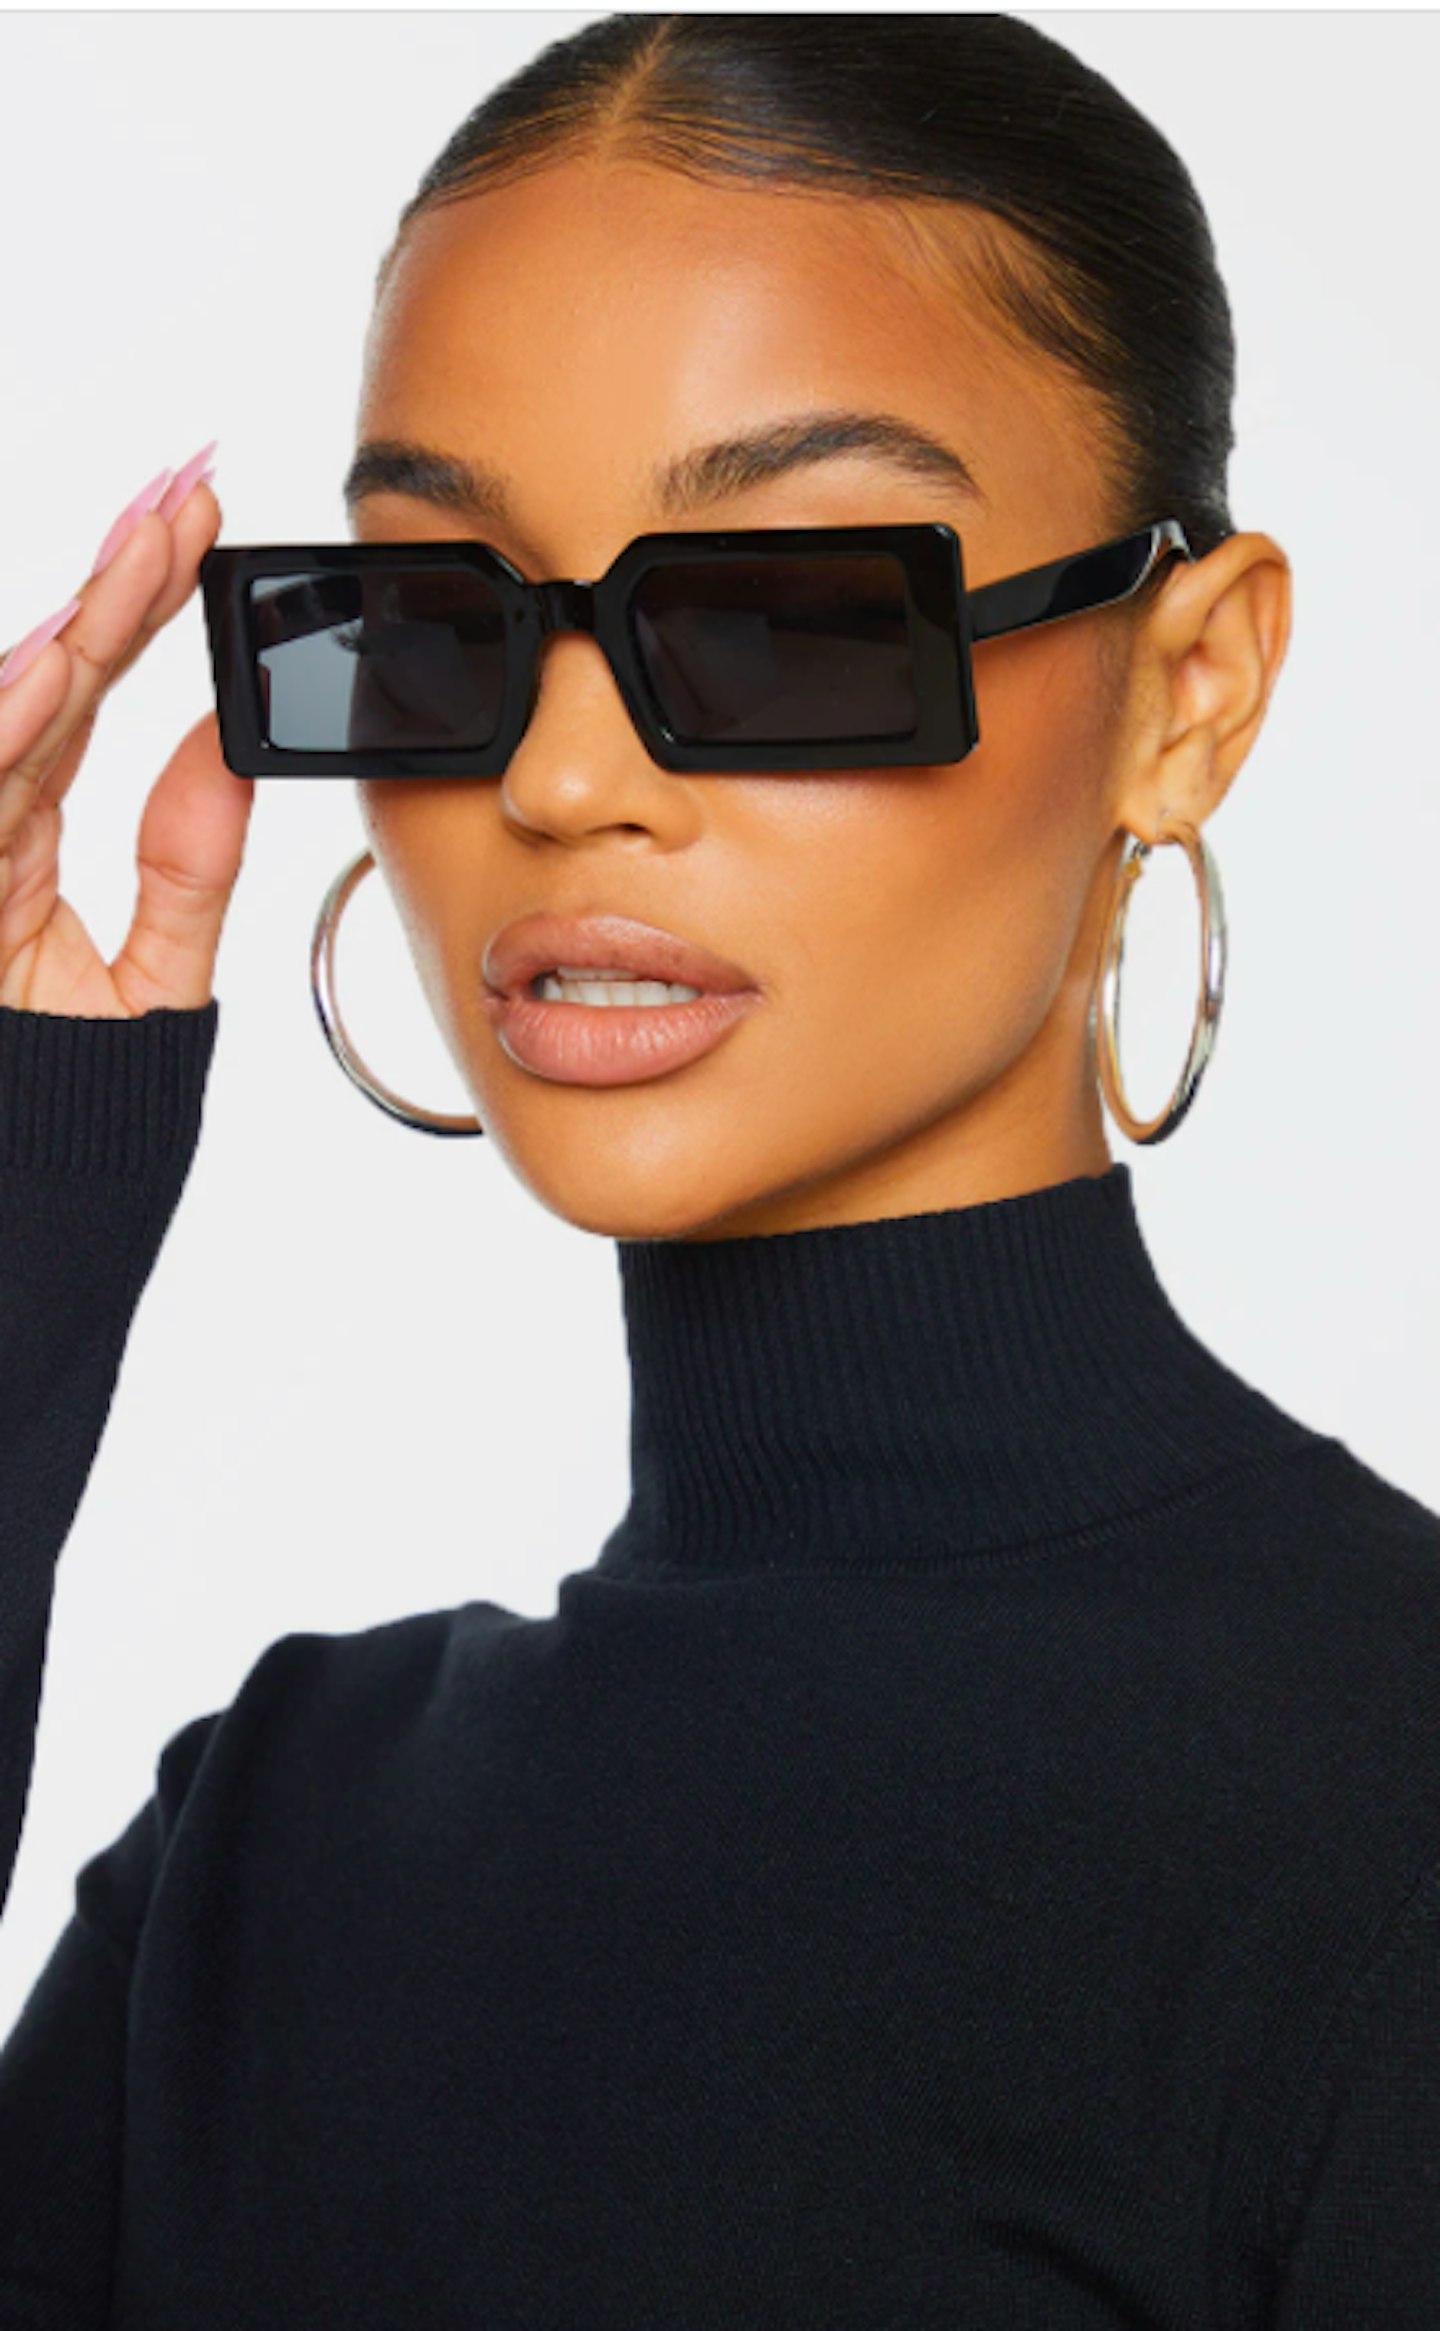 Black Squareframe Slimline Sunglasses